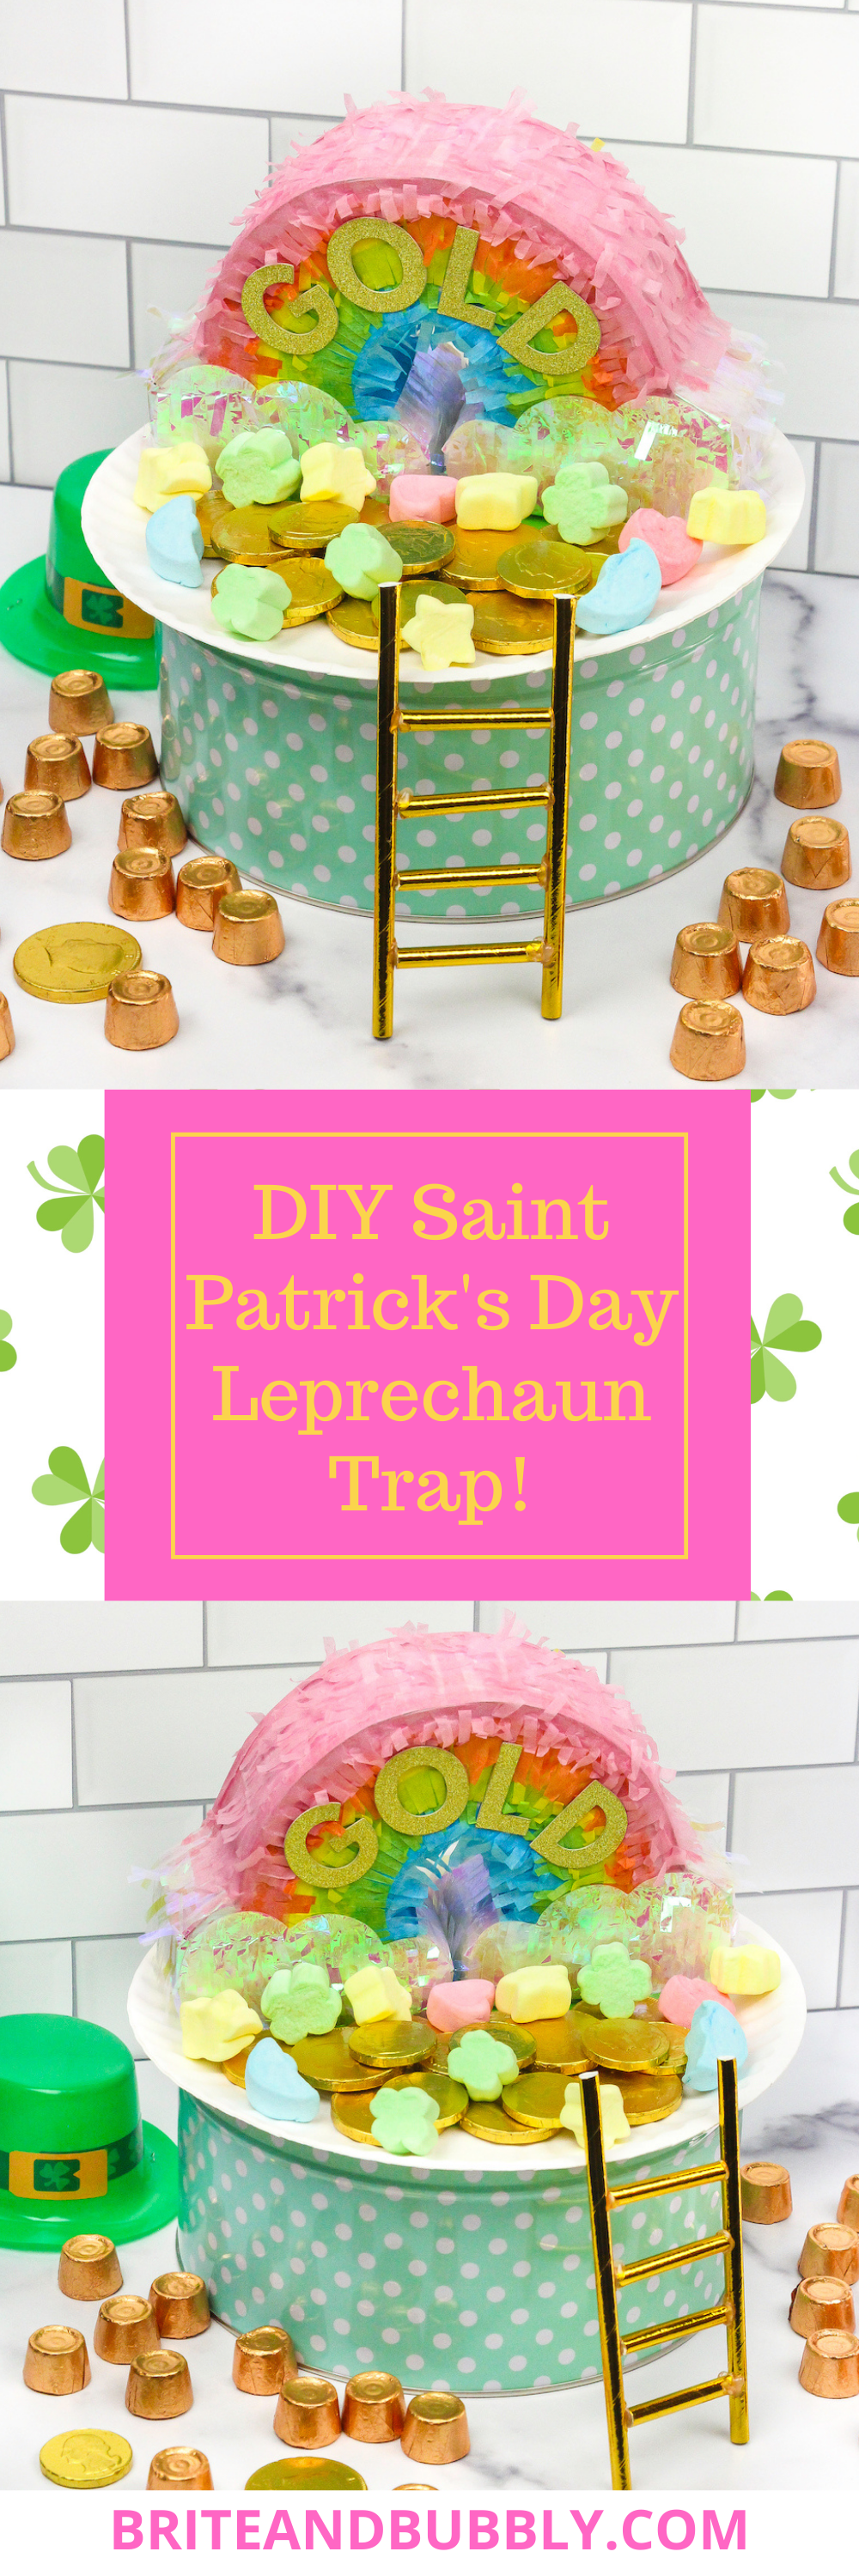 DIY Leprechaun trap pin